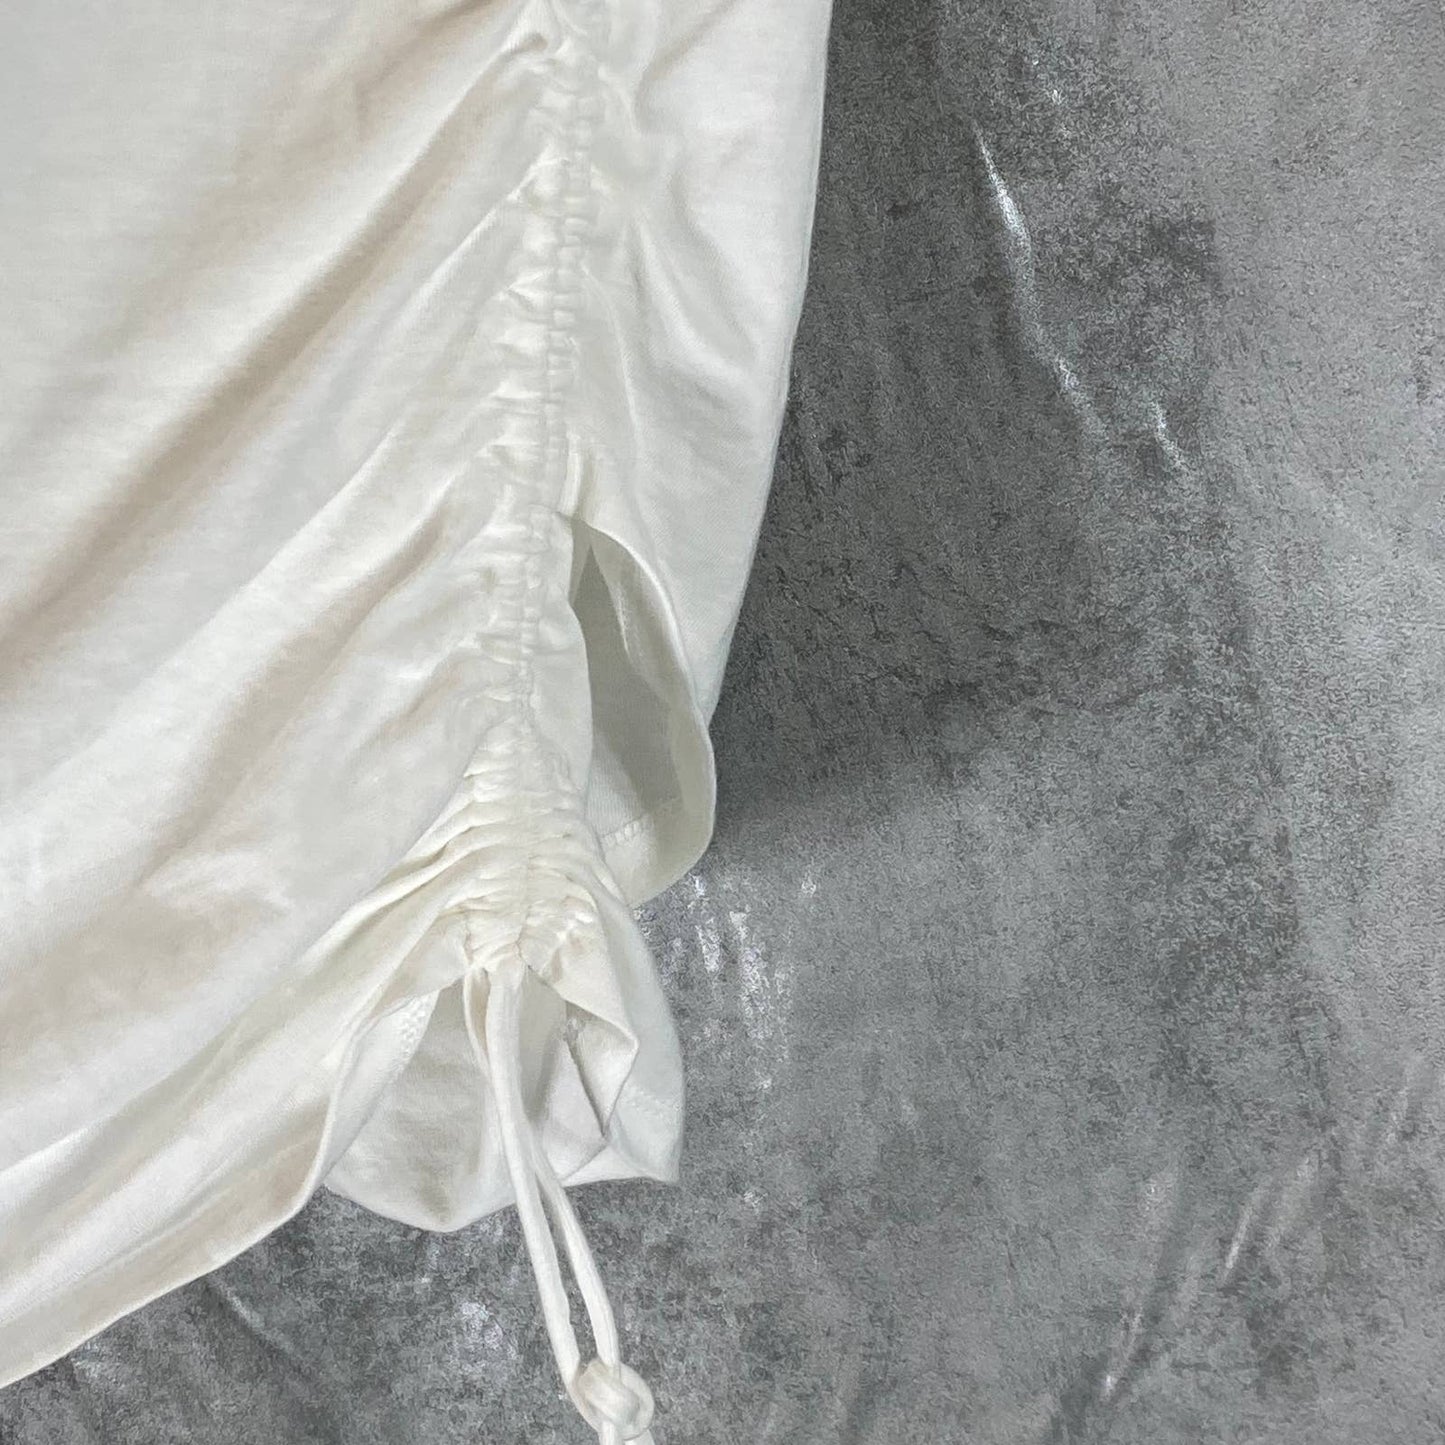 INC INTERNATIONAL CONCEPTS Women's Bright White Cotton Surplice Side-Tie Top SZM